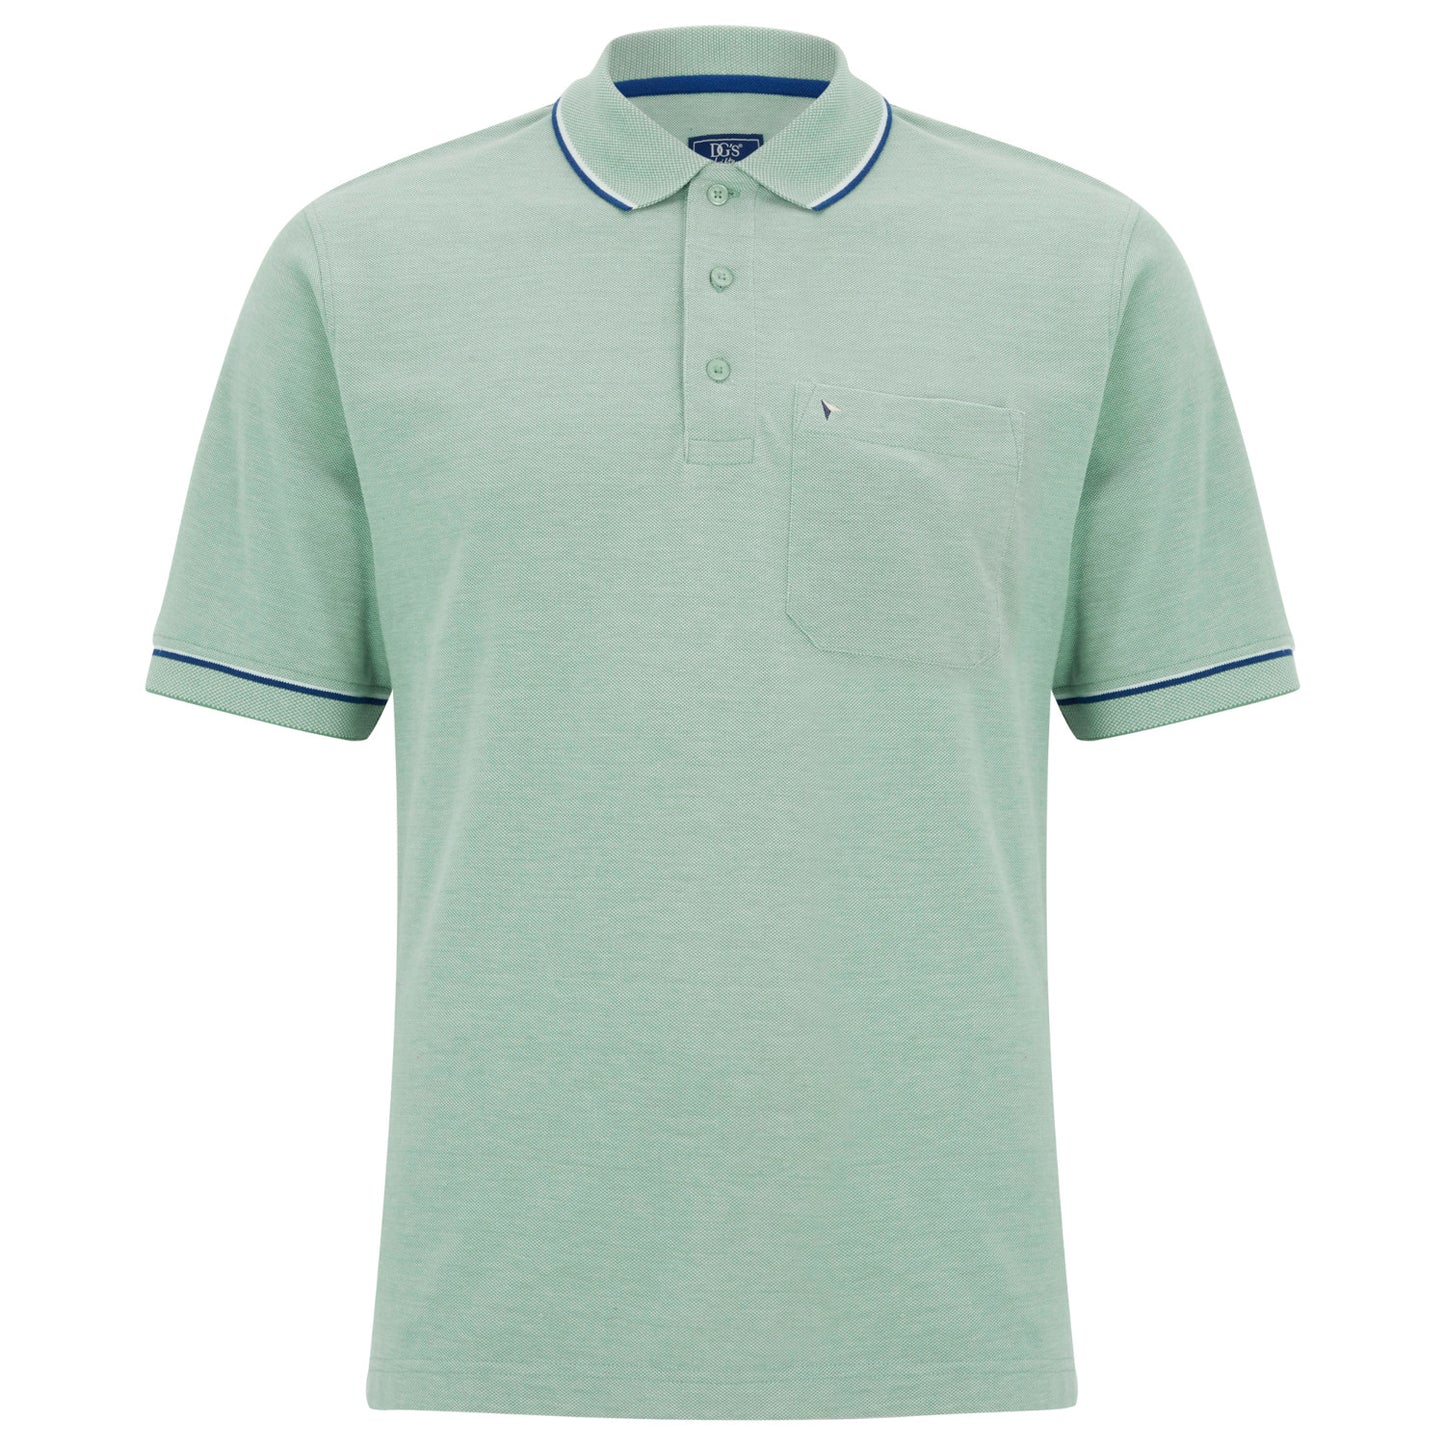 Daniel Grahame 55104 33 Light Green Polo Shirt